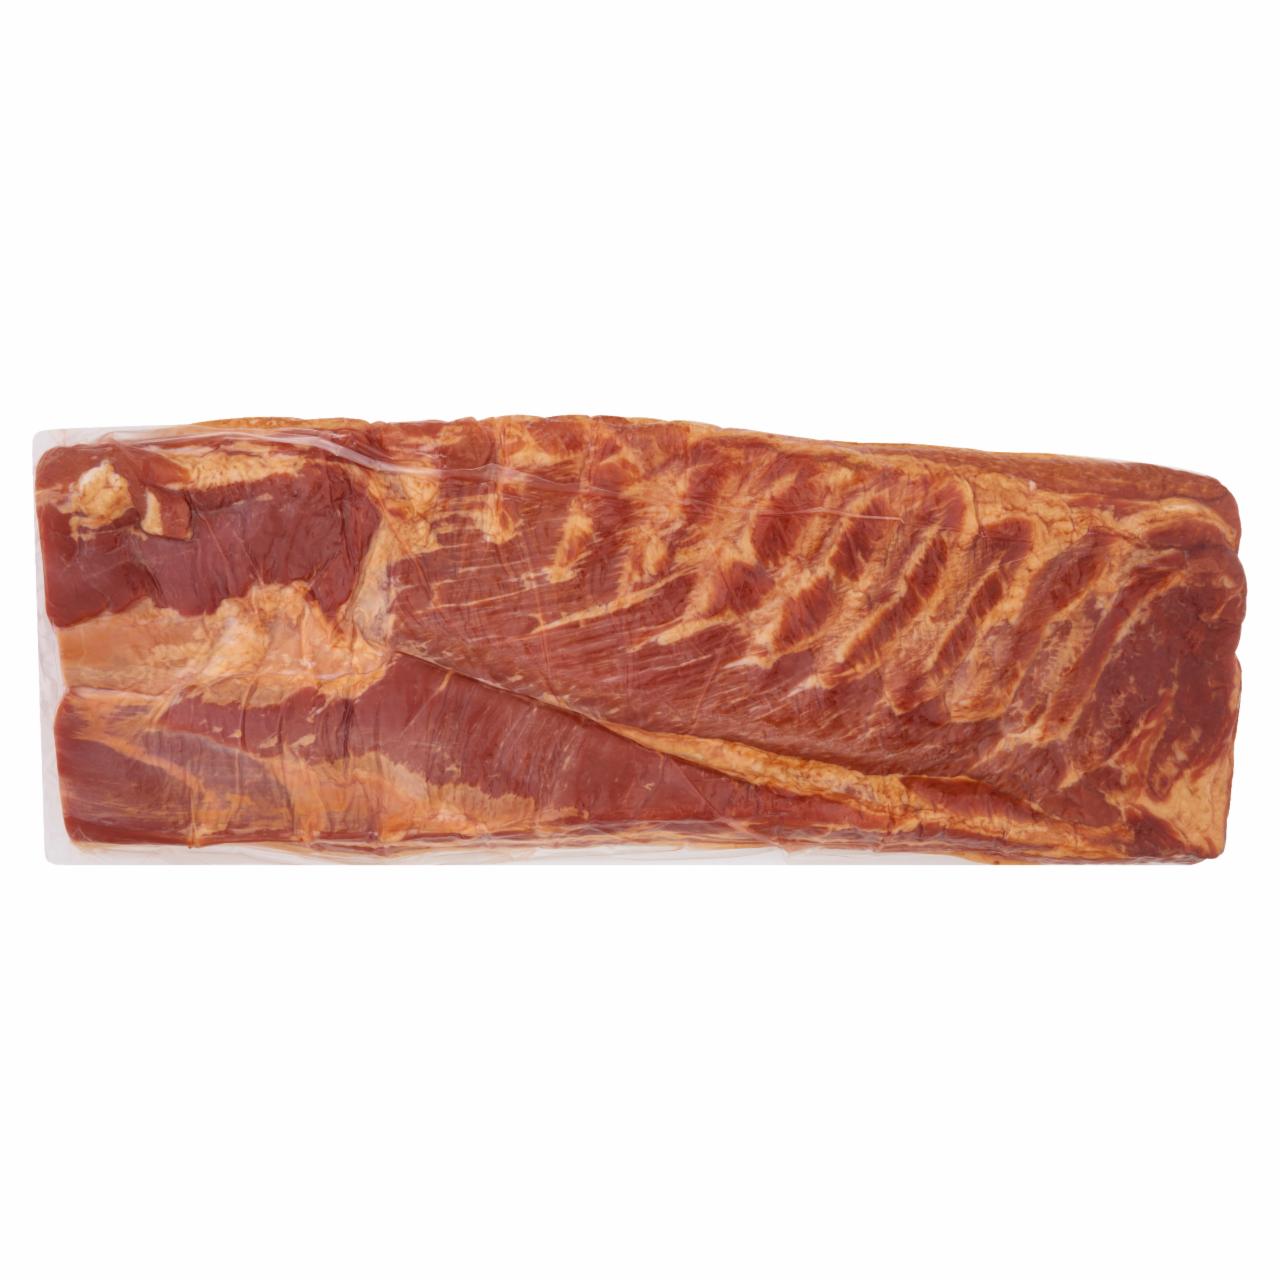 Képek - Füstölt-főtt sertés táblás bacon szalonna